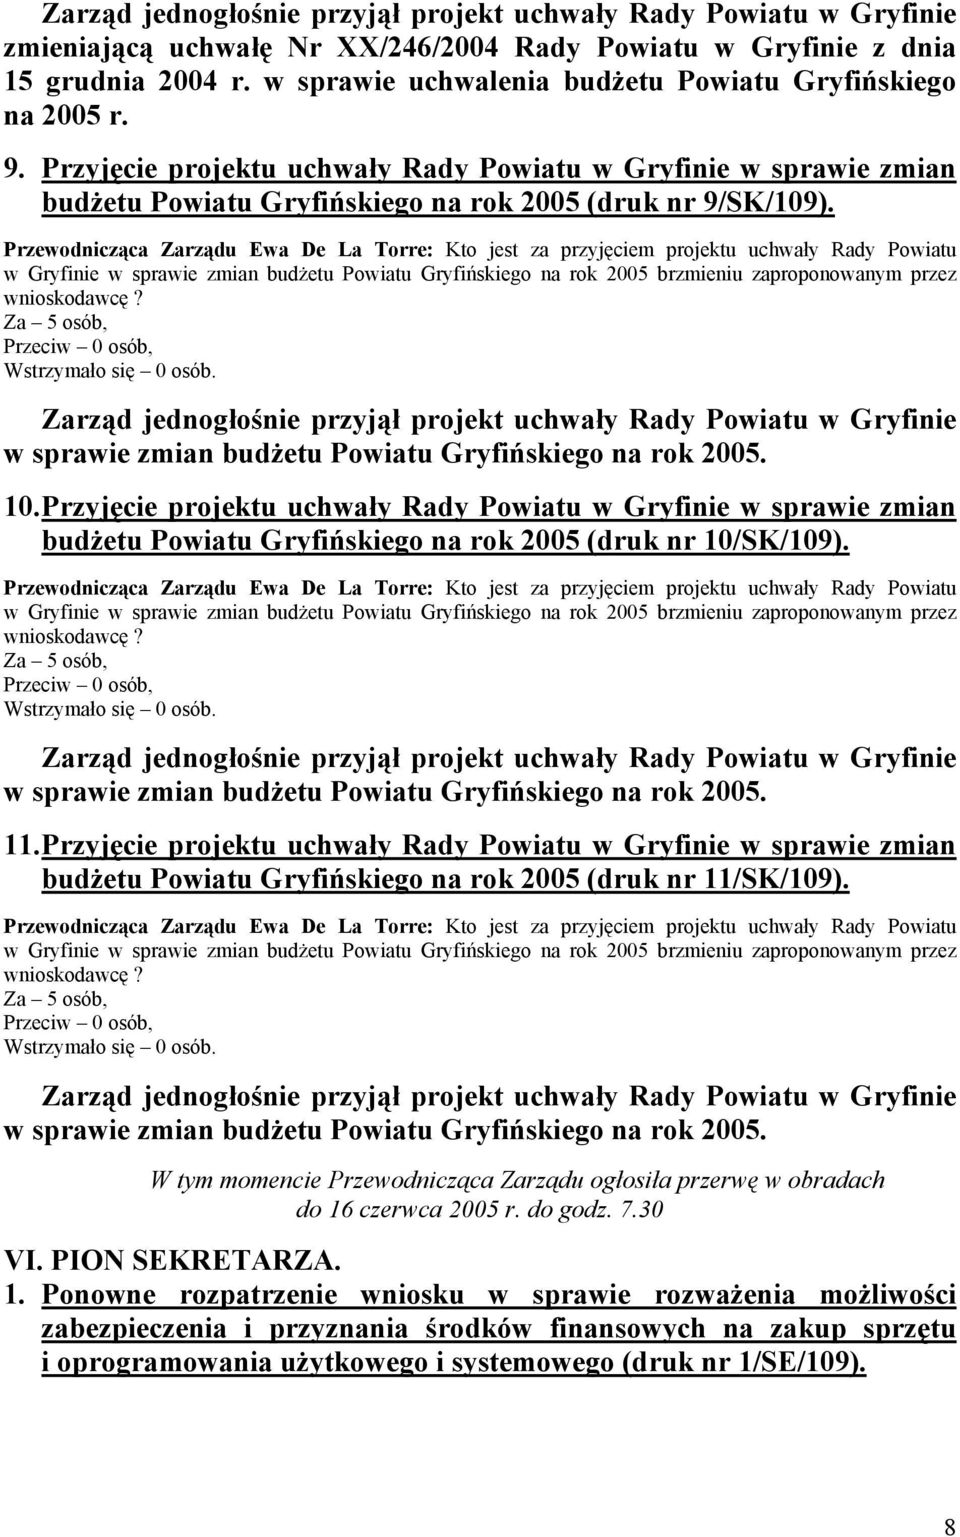 Przyjęcie projektu uchwały Rady Powiatu w Gryfinie w sprawie zmian budżetu Powiatu Gryfińskiego na rok 2005 (druk nr 10/SK/109). 11.